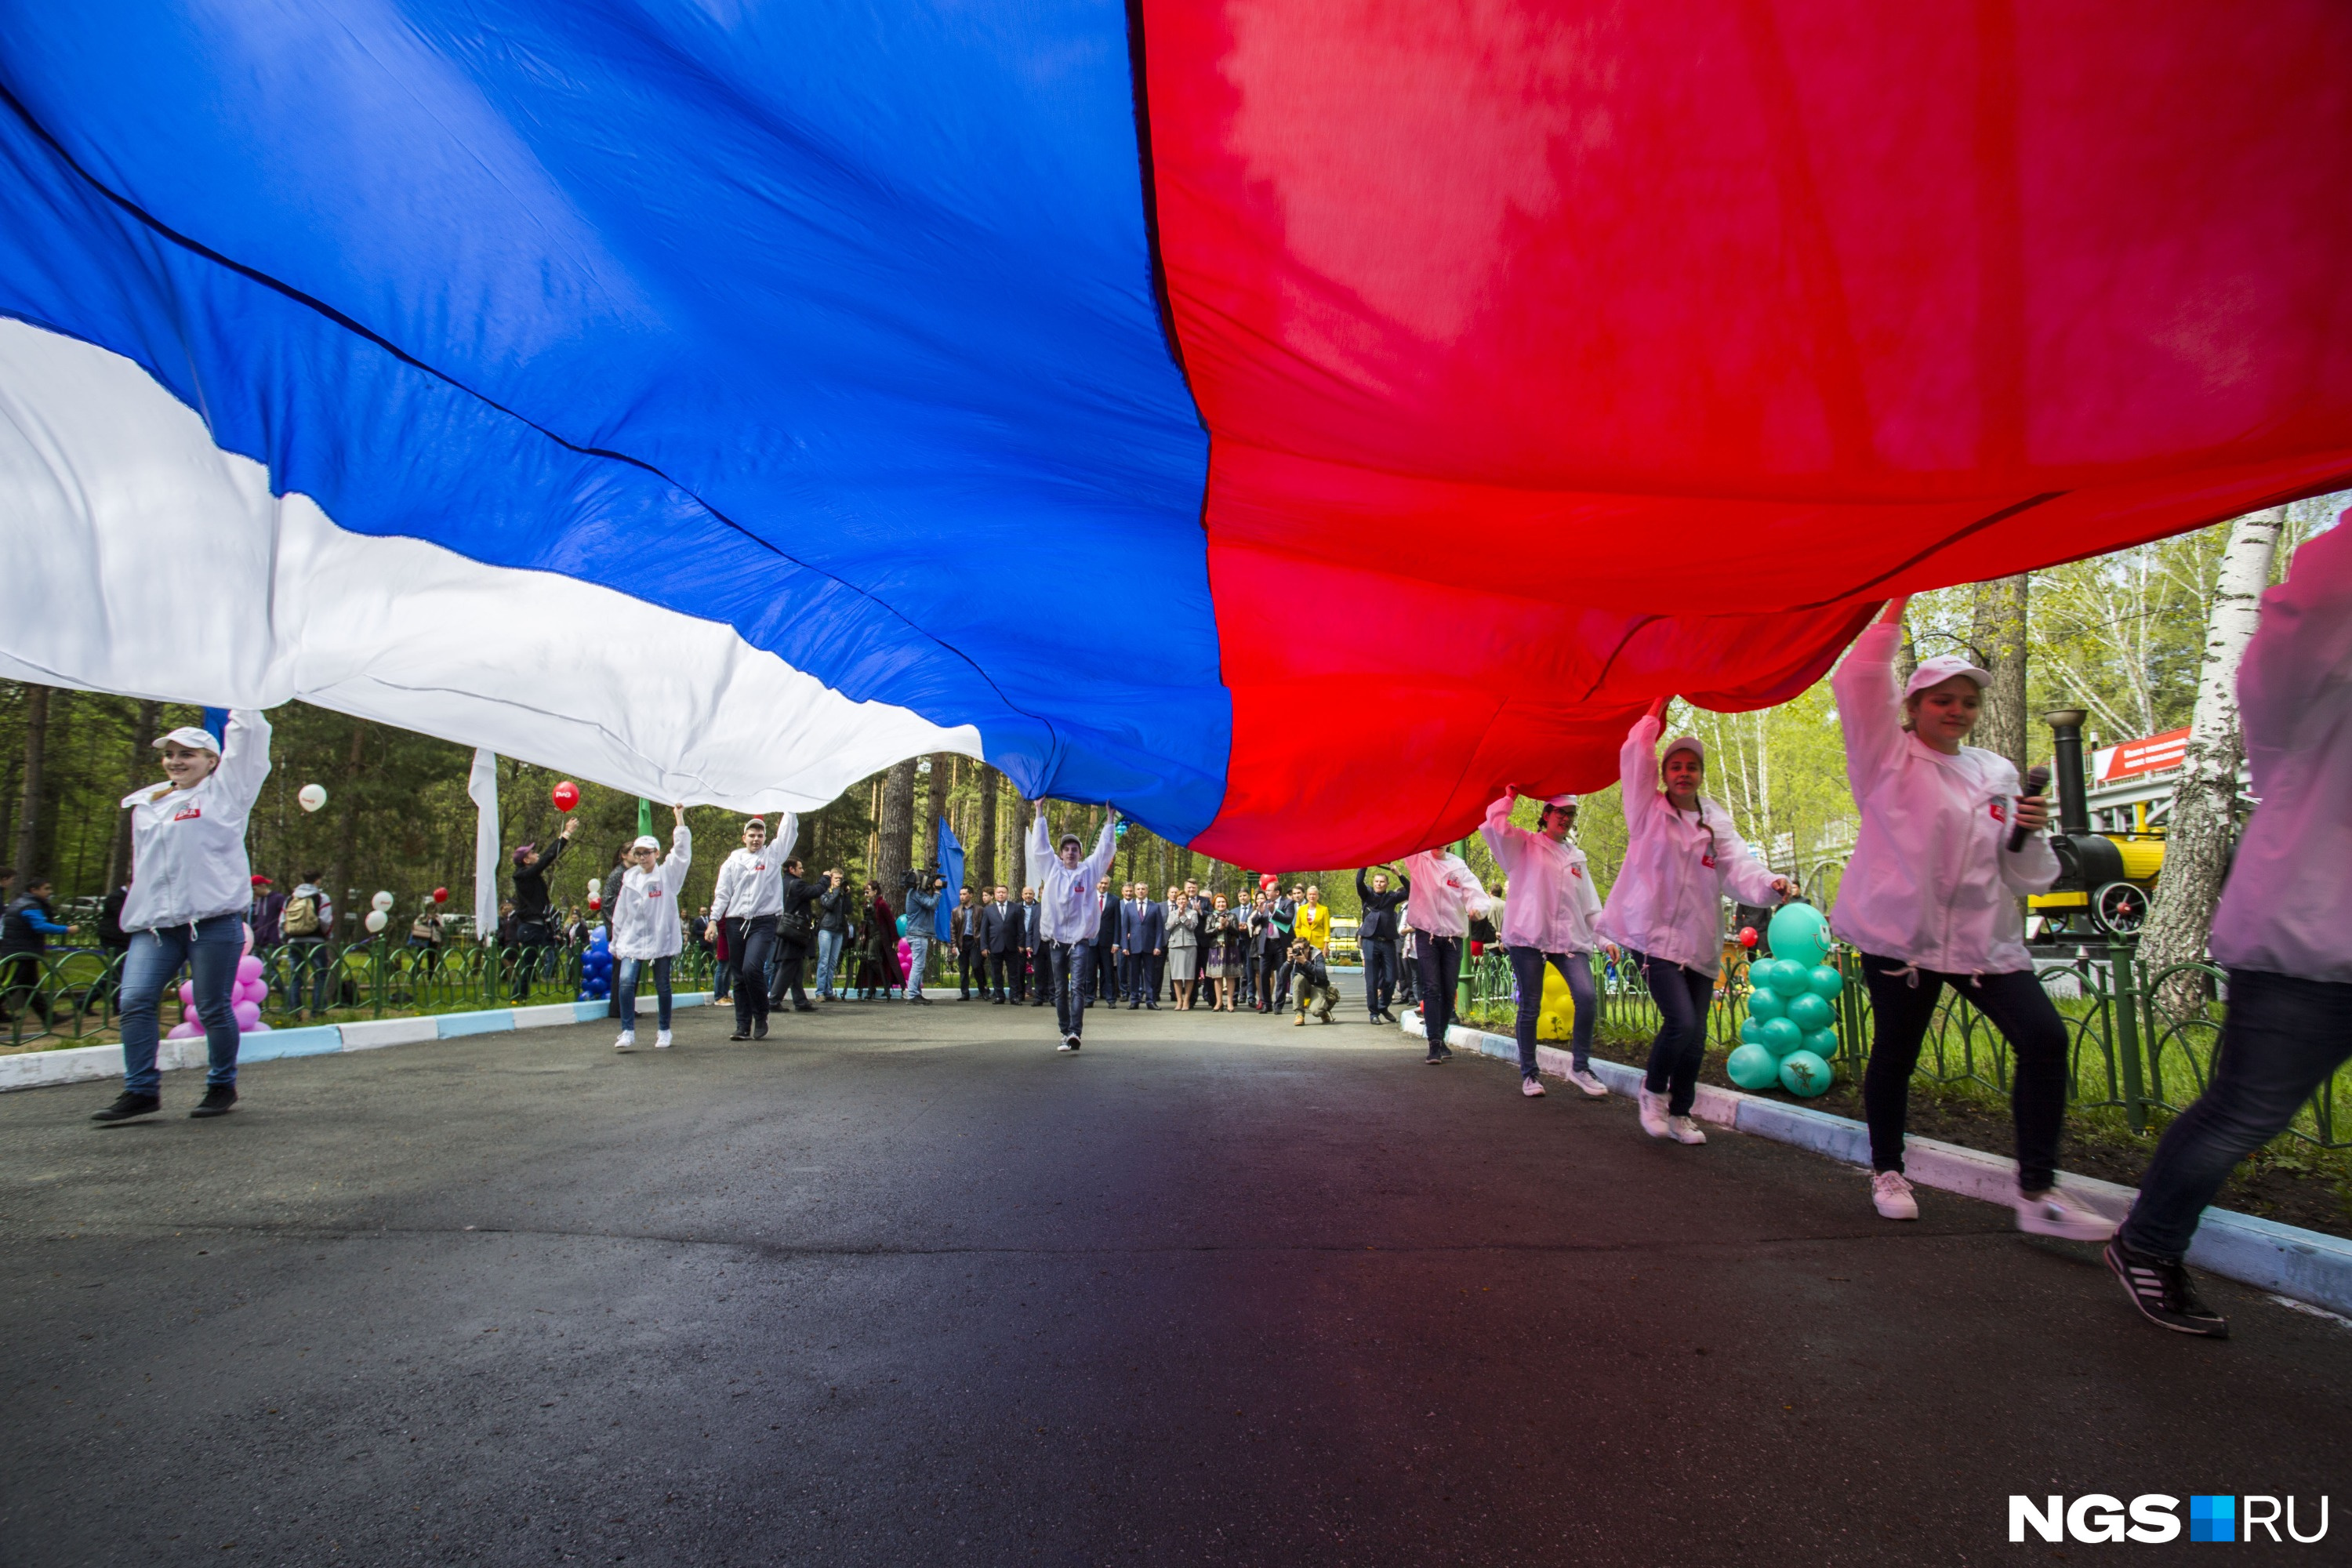 Во время праздника по станции пронесли огромный флаг России